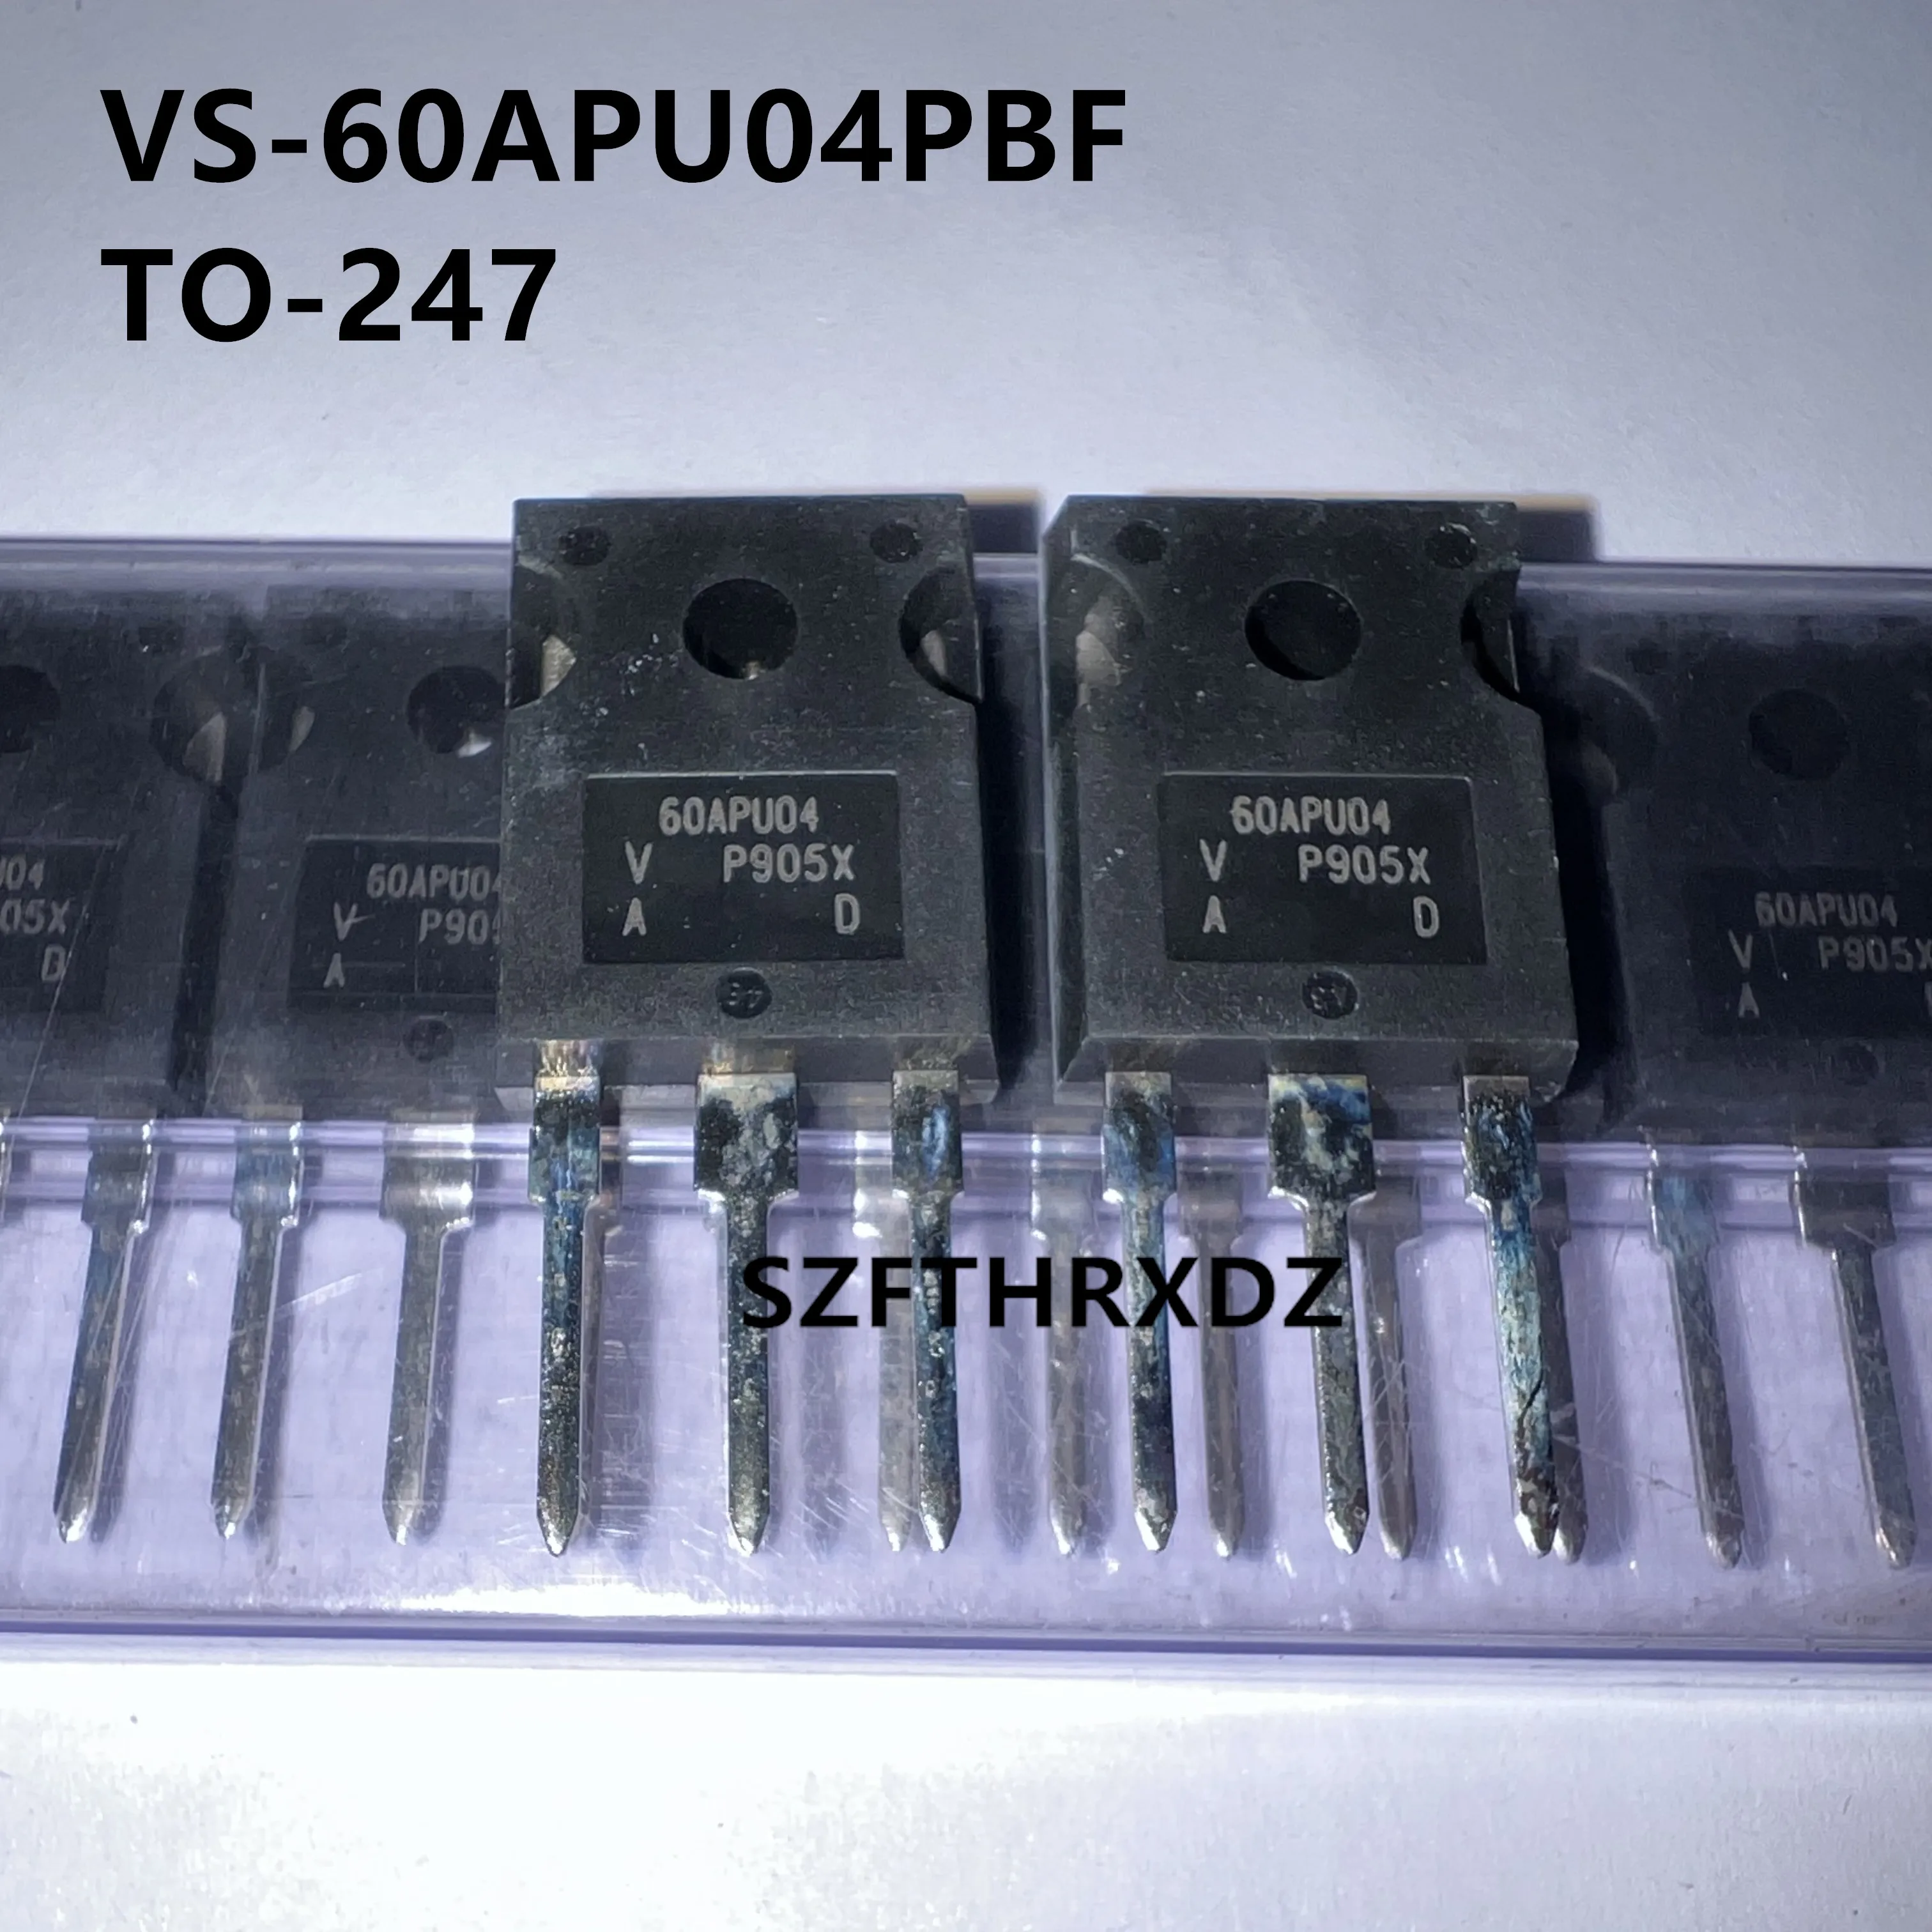 

10pcs 100% New Imported Original VS-60APU04PBF VS-60APU04-N3 60APU04PBF 60APU04 TO-247 Fast recovery diode 400V 60A